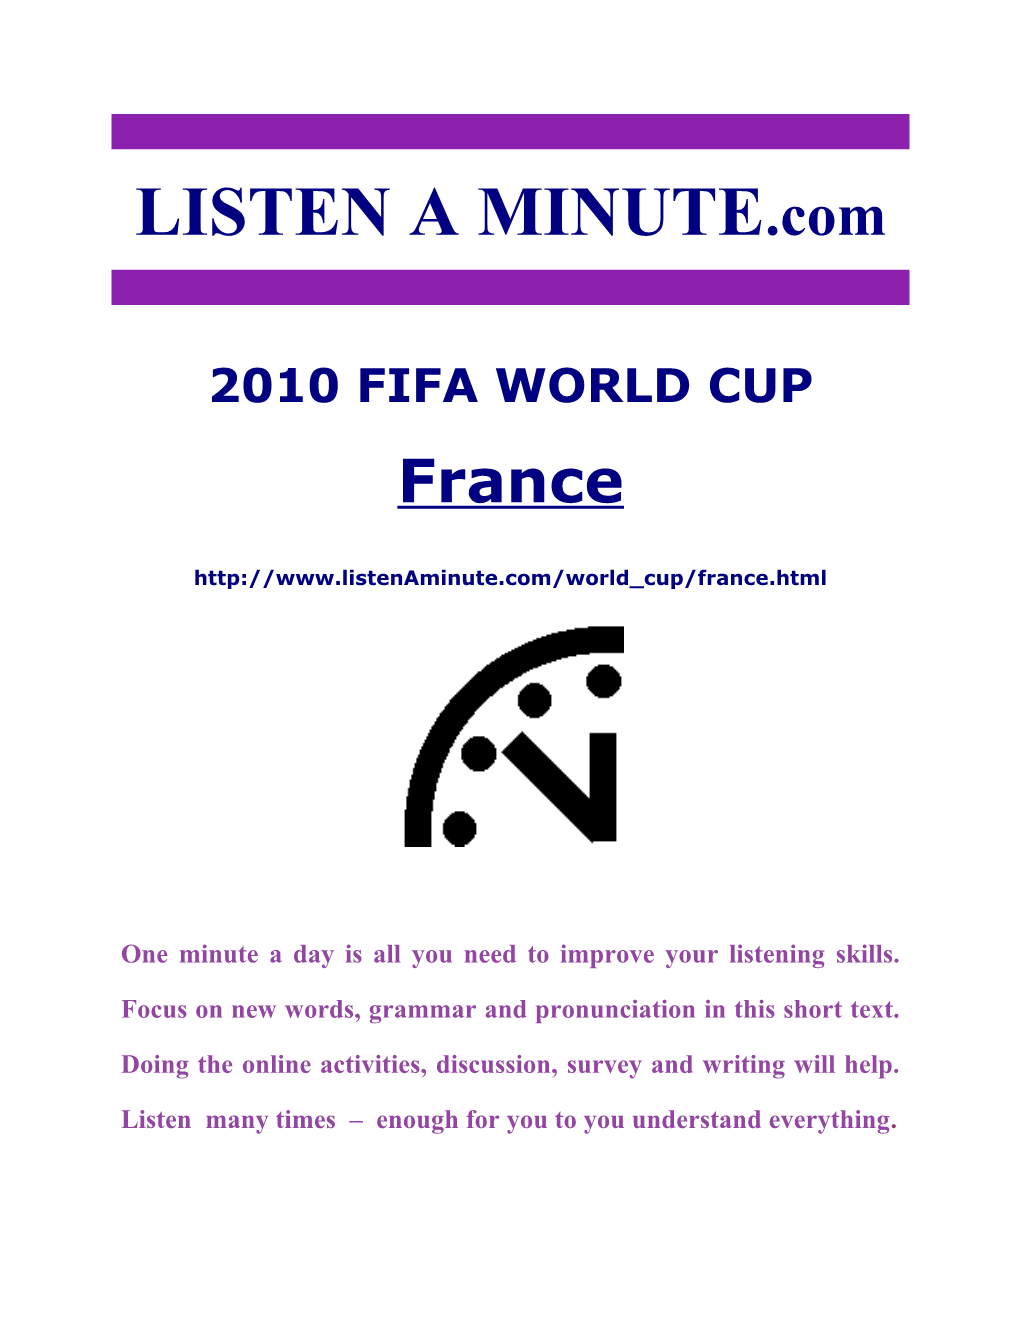 Listen a Minute.Com - ESL Listening - 2010 World Cup - France